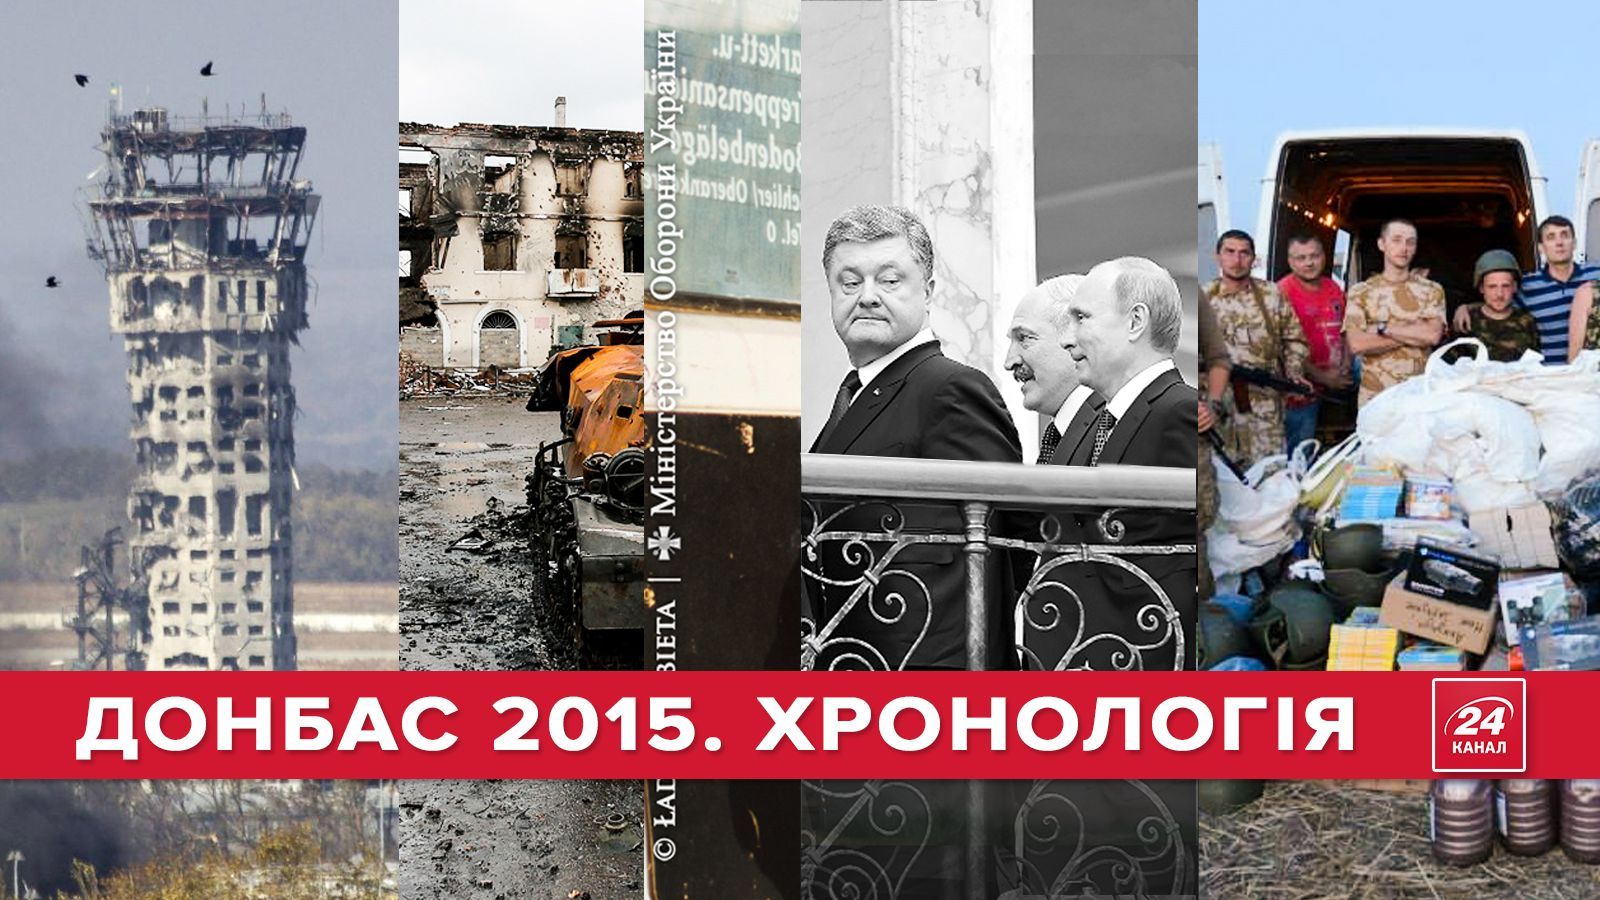 Война 2015: хронология событий на Донбассе (18+)